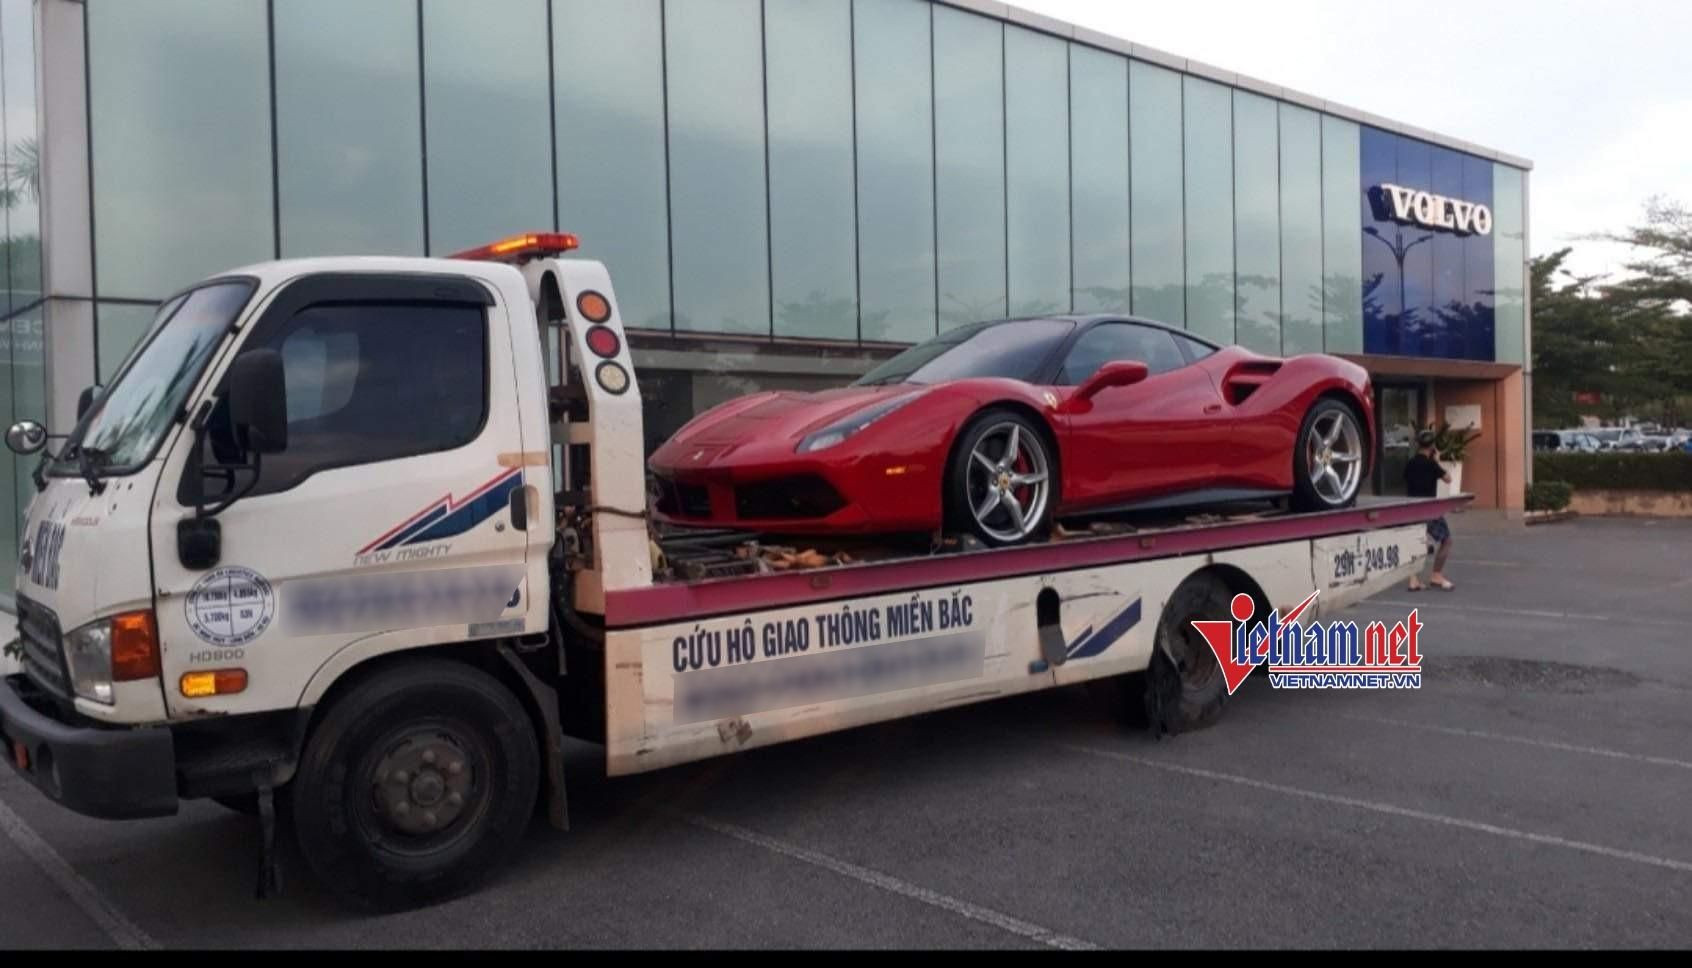 Chủ siêu xe Ferrari bị tai nạn: Hãng đưa thông tin không đúng bản chất